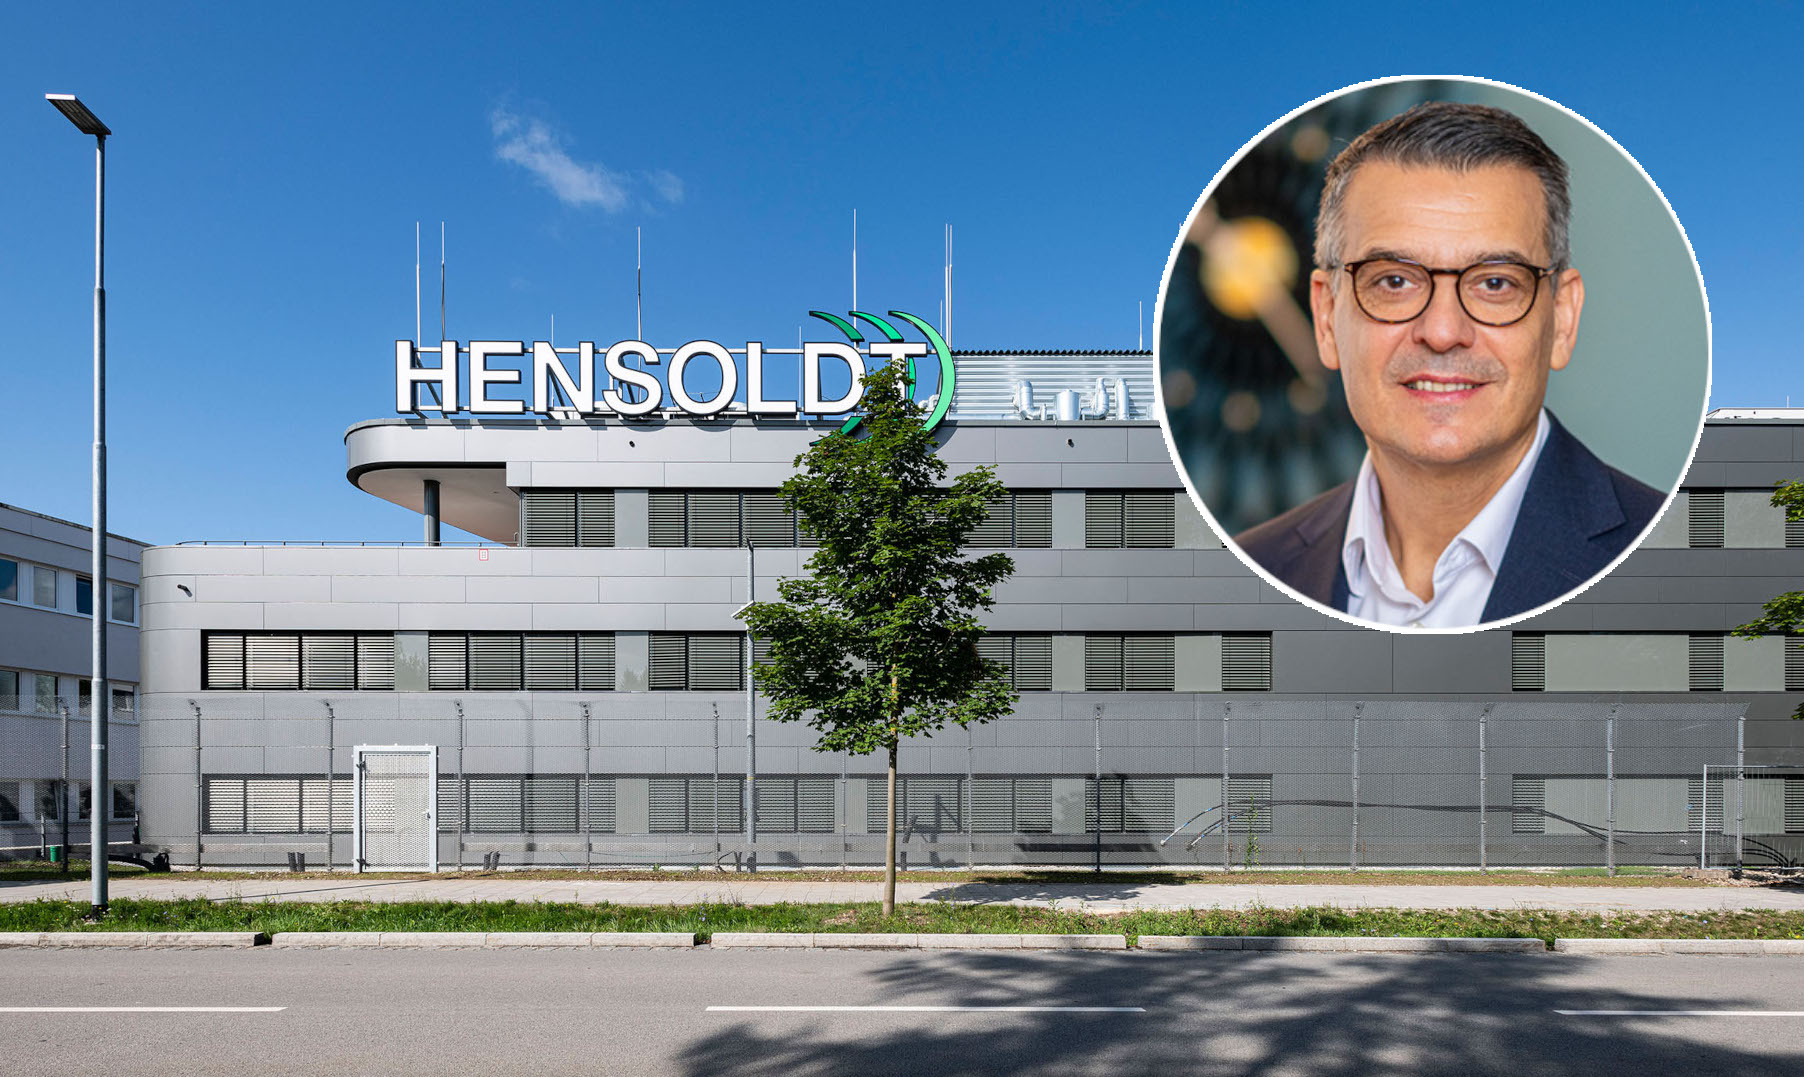 Hensoldt wird zukünftig seine Aktivitäten in vier Abteilungen unterteilen, wodurch es dem Unternehmen ermöglicht werde, sich „auf die weitere Skalierung unseres Lösungsgeschäfts zu konzentrieren und gleichzeitig unser Kernproduktportfolio zu stärken“, erläutert der CEO von Hensoldt, Oliver Dörre.